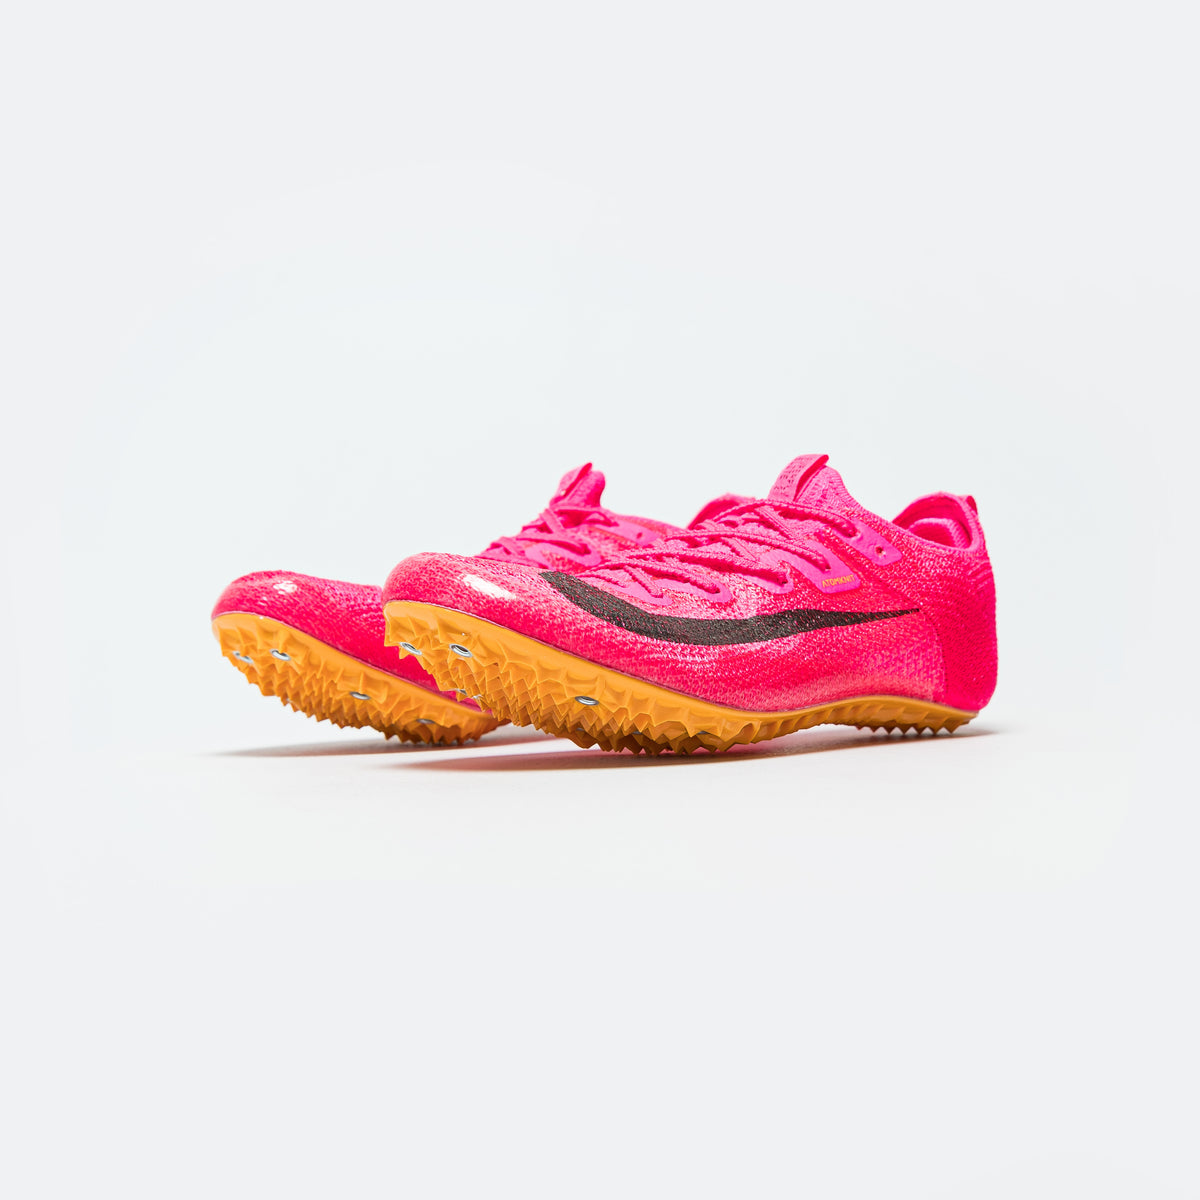 Nike Zoom Superfly Elite 2 Hyper Pink